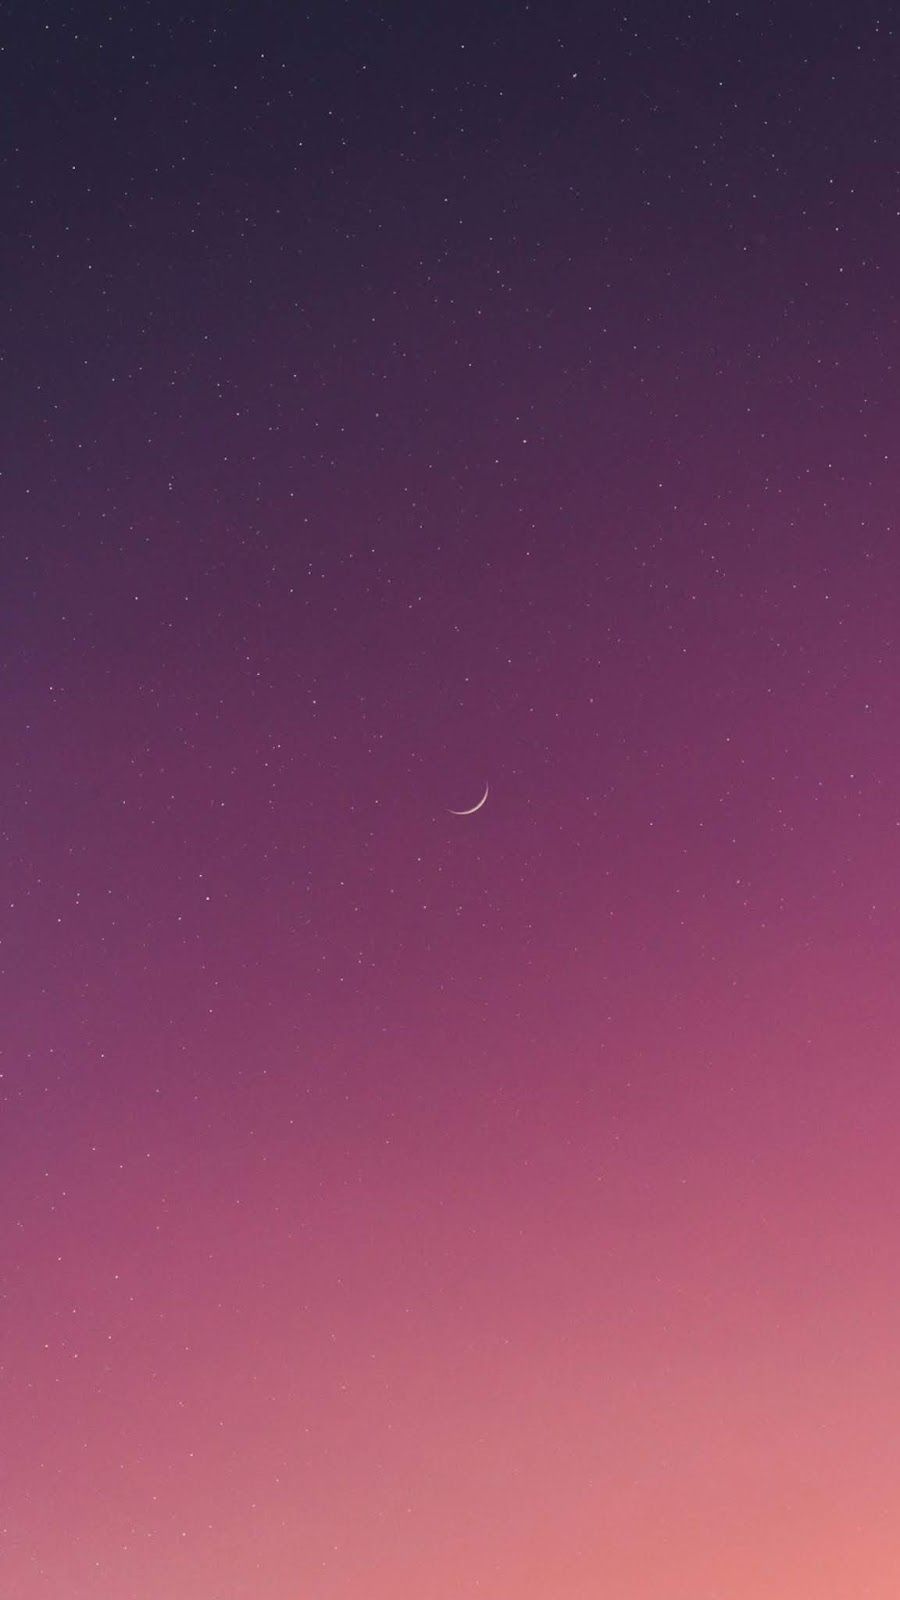 Enchanted Night Sky Wallpaper Beautiful